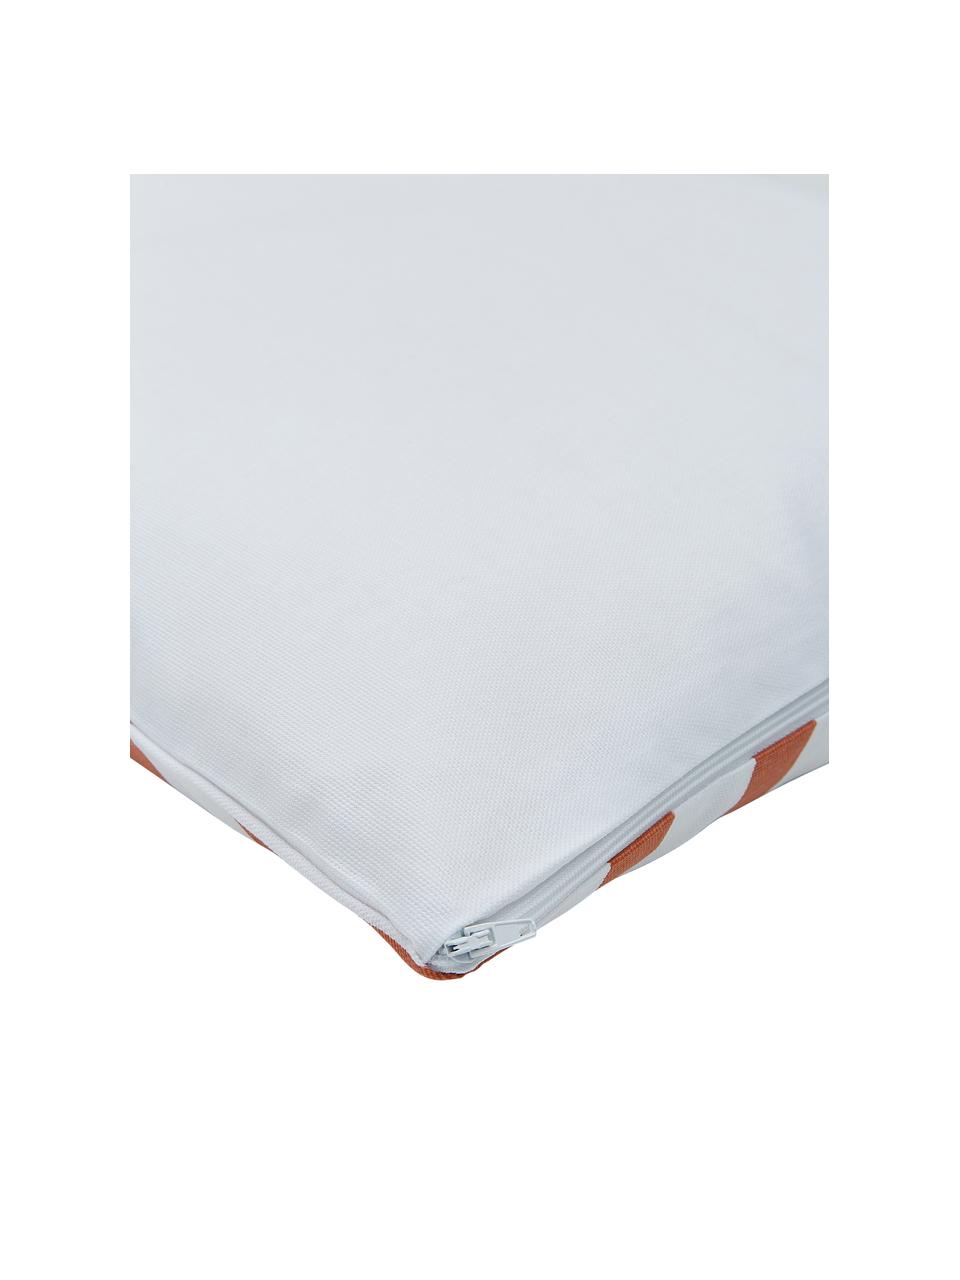 Povlak na polštář s grafickým vzorem Bram, 100 % bavlna, Bílá, oranžová, Š 45 cm